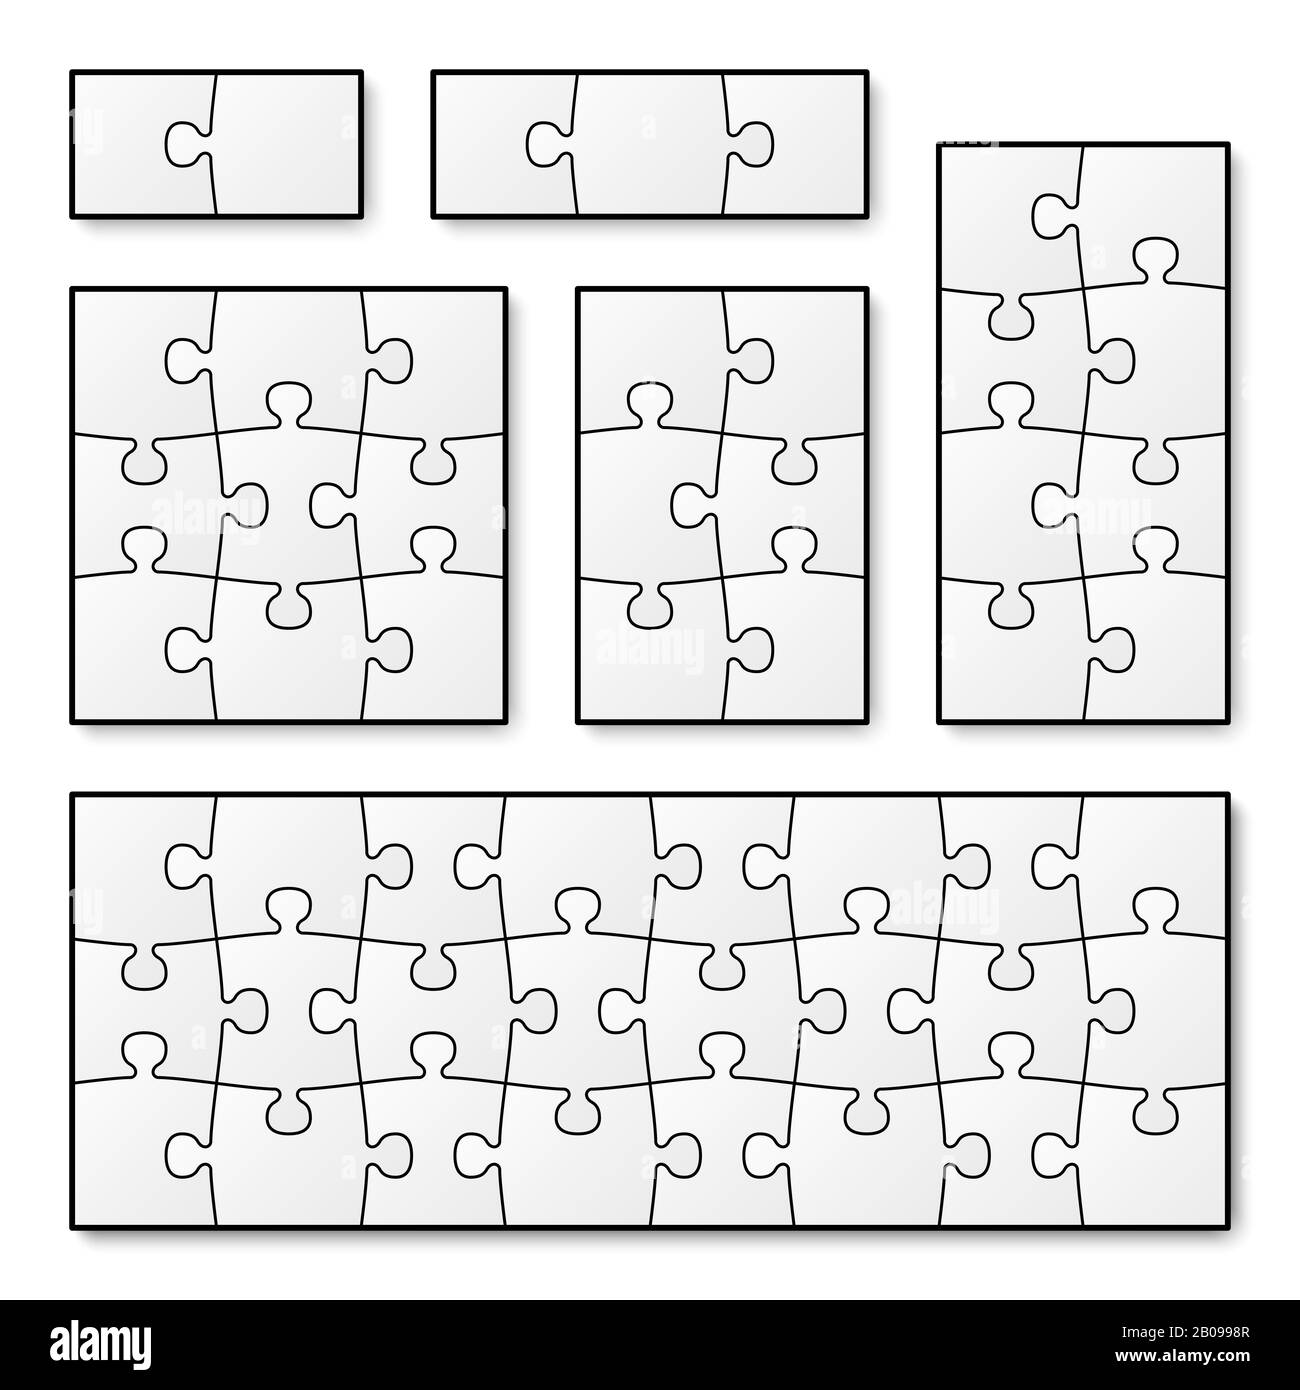 Vektor-leere Puzzleteile für Puzzle-Spiel. Puzzle-Puzzle-Puzzle, Spiel-Illustration-Teil Puzzle Stock Vektor